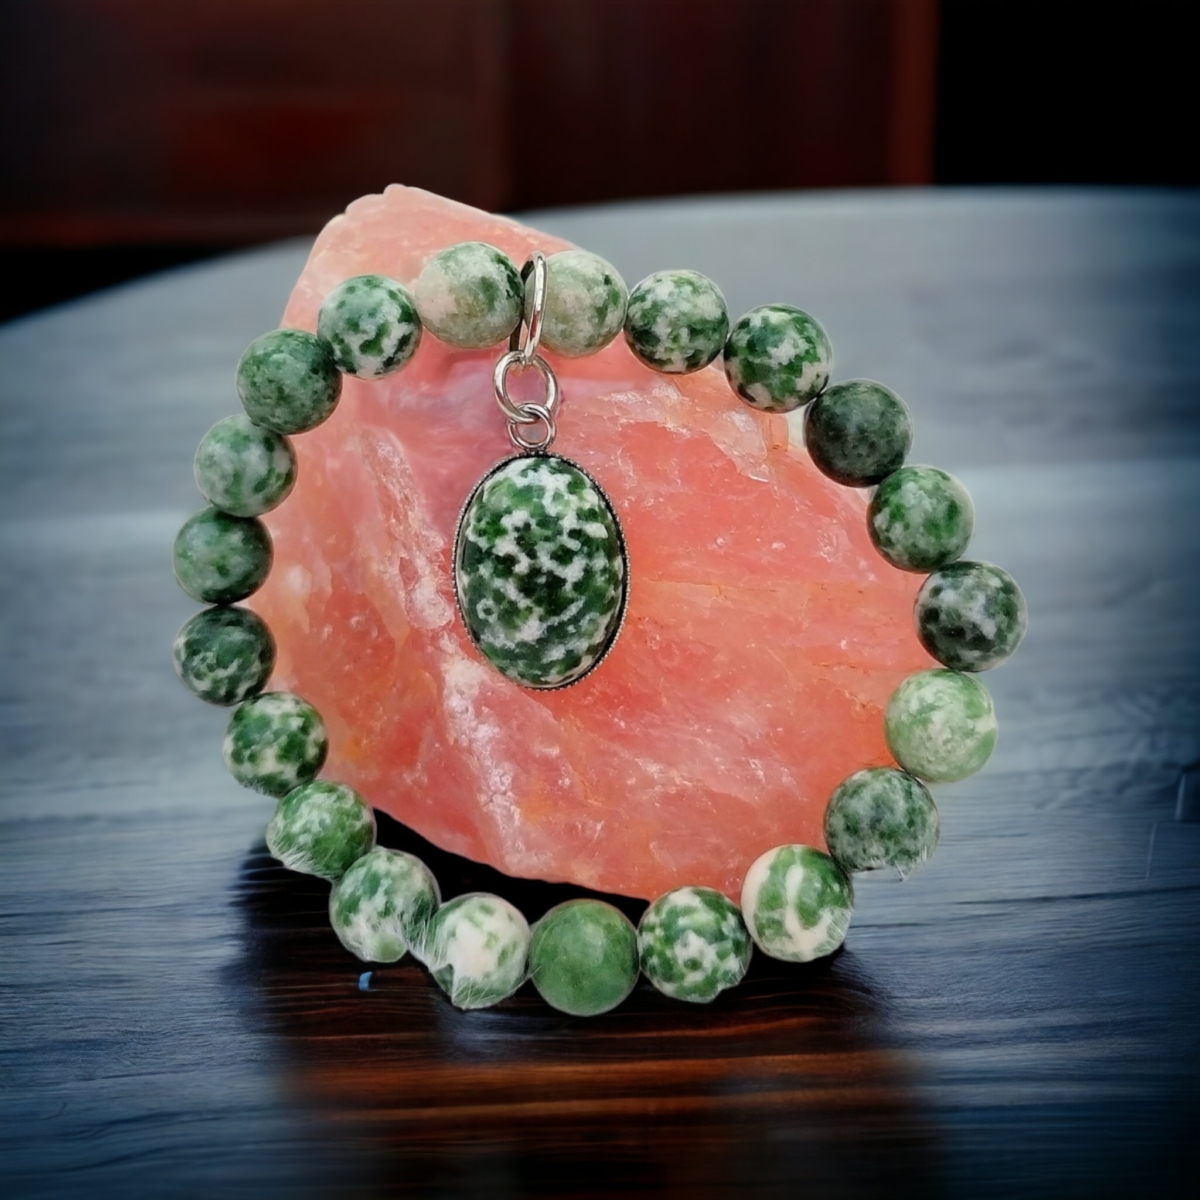 Jade zöld pettyes karkötő ovális medállal bőrbarát formában 